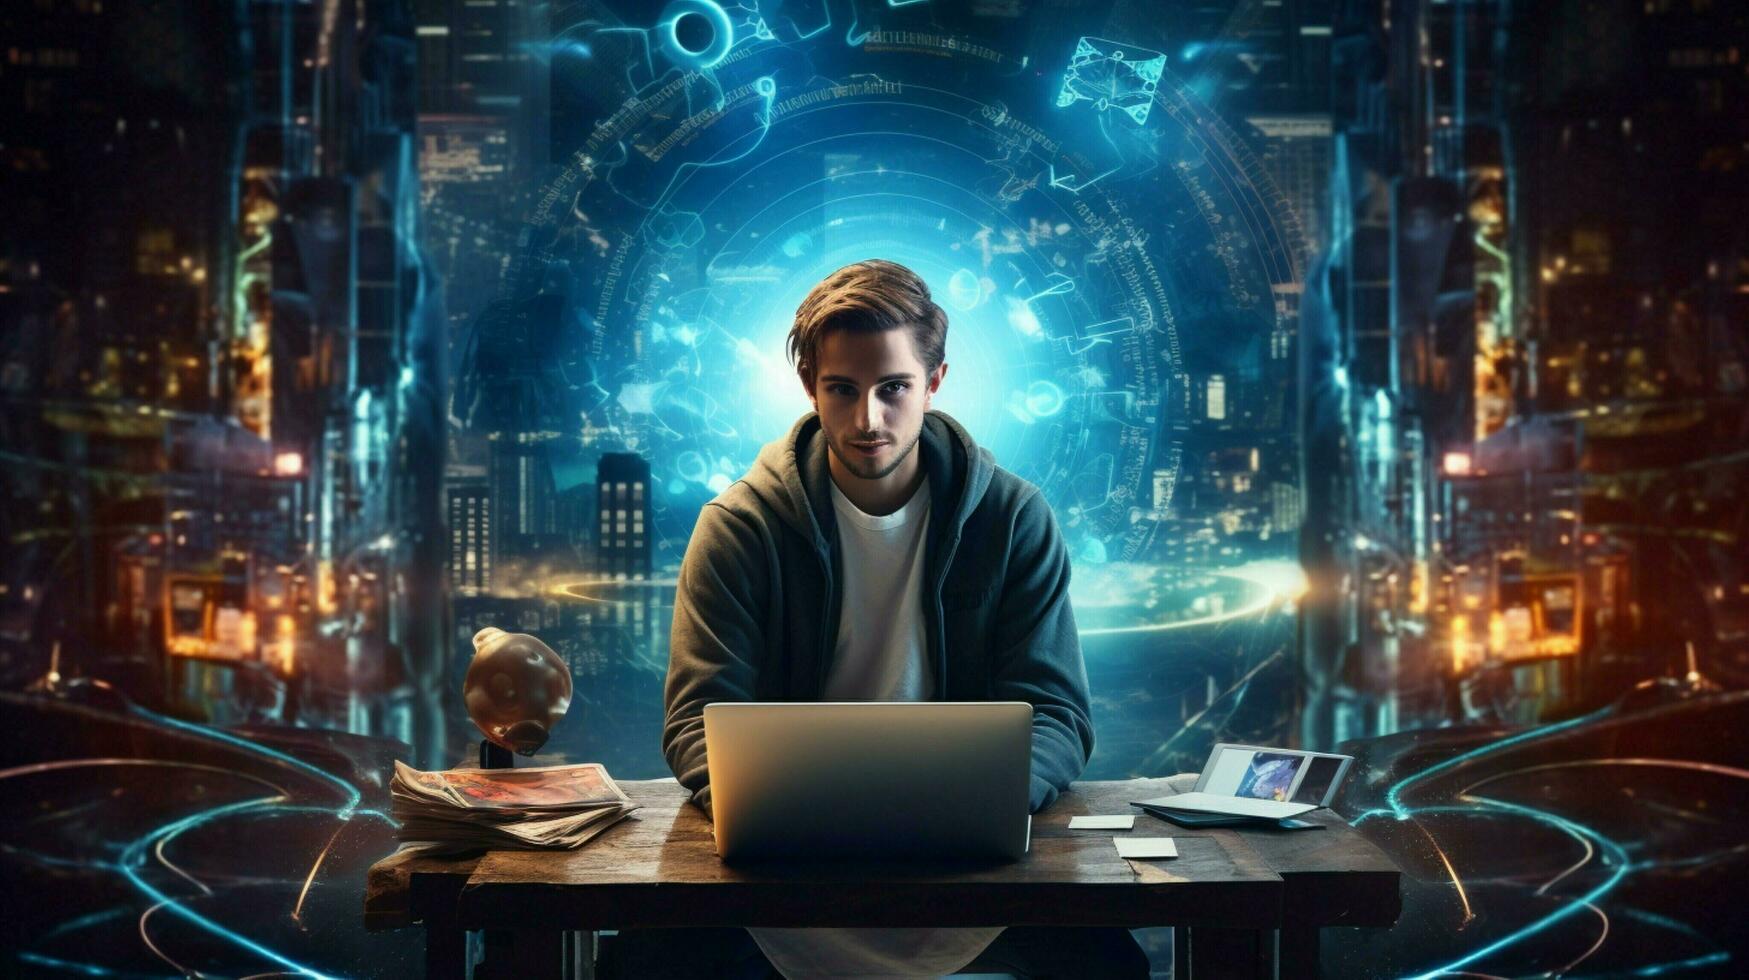 joven adulto sentado a futurista escritorio trabajando en computadora foto